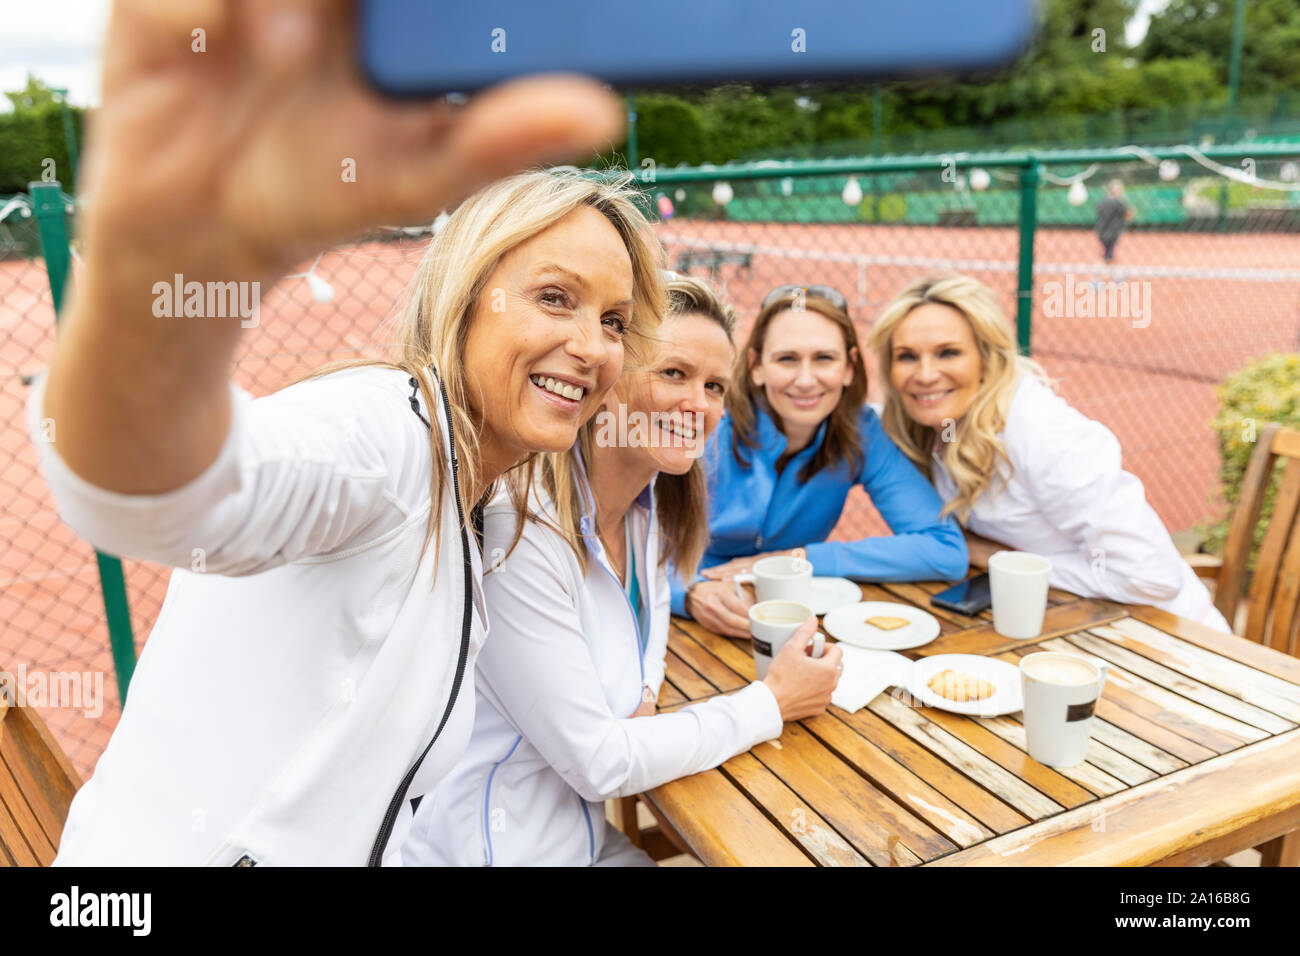 Gruppe von Frauen, die ein selfie am Tennis Club nach einem Spiel Stockfoto